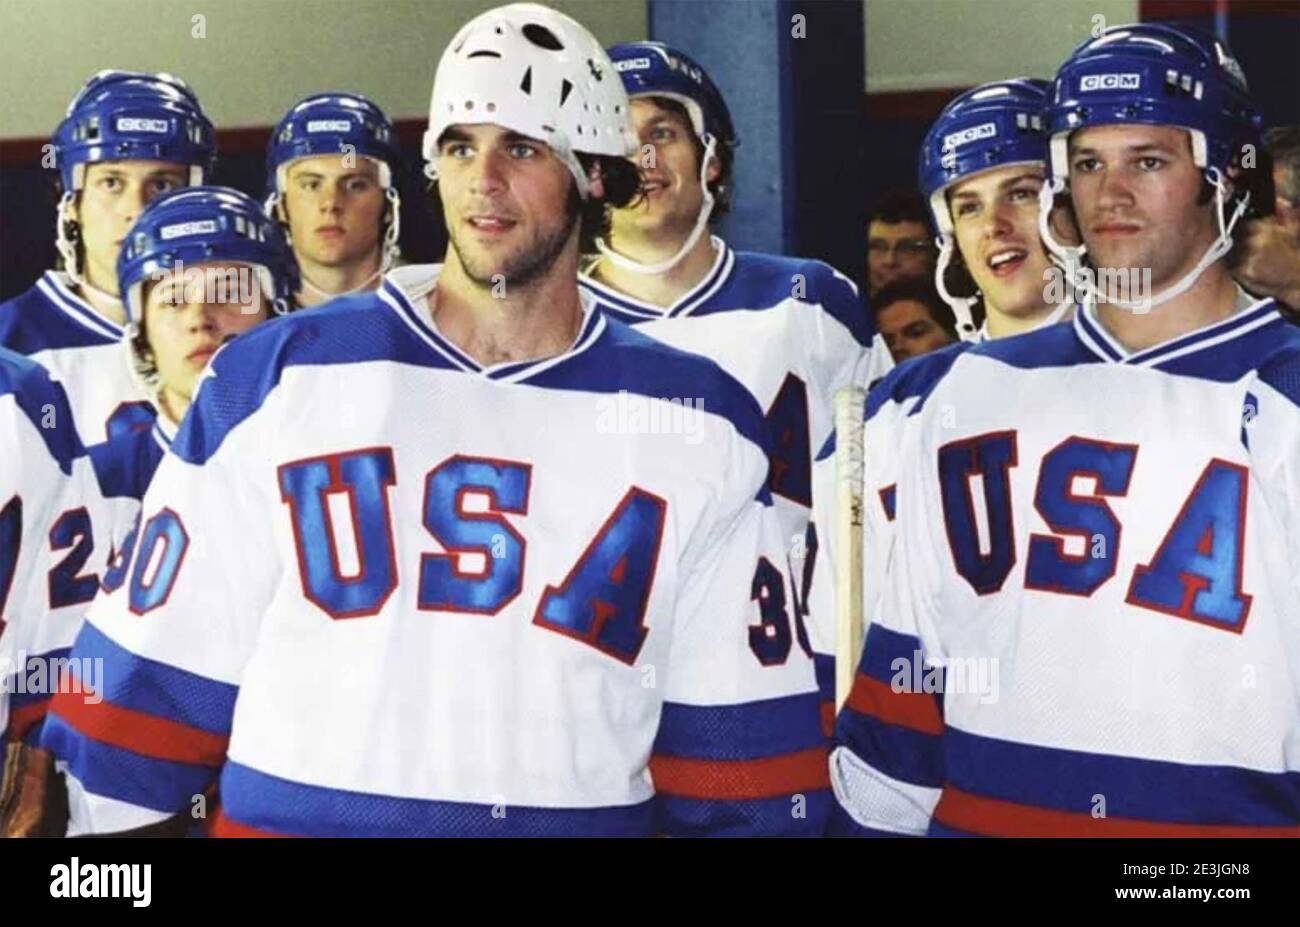 MIRACLE 2004 Buena Vista Pictures Film über die US-Männer Eishockey tesm gewann die Goldmedaille bei der 1980 Olympische Winterspiele Stockfoto